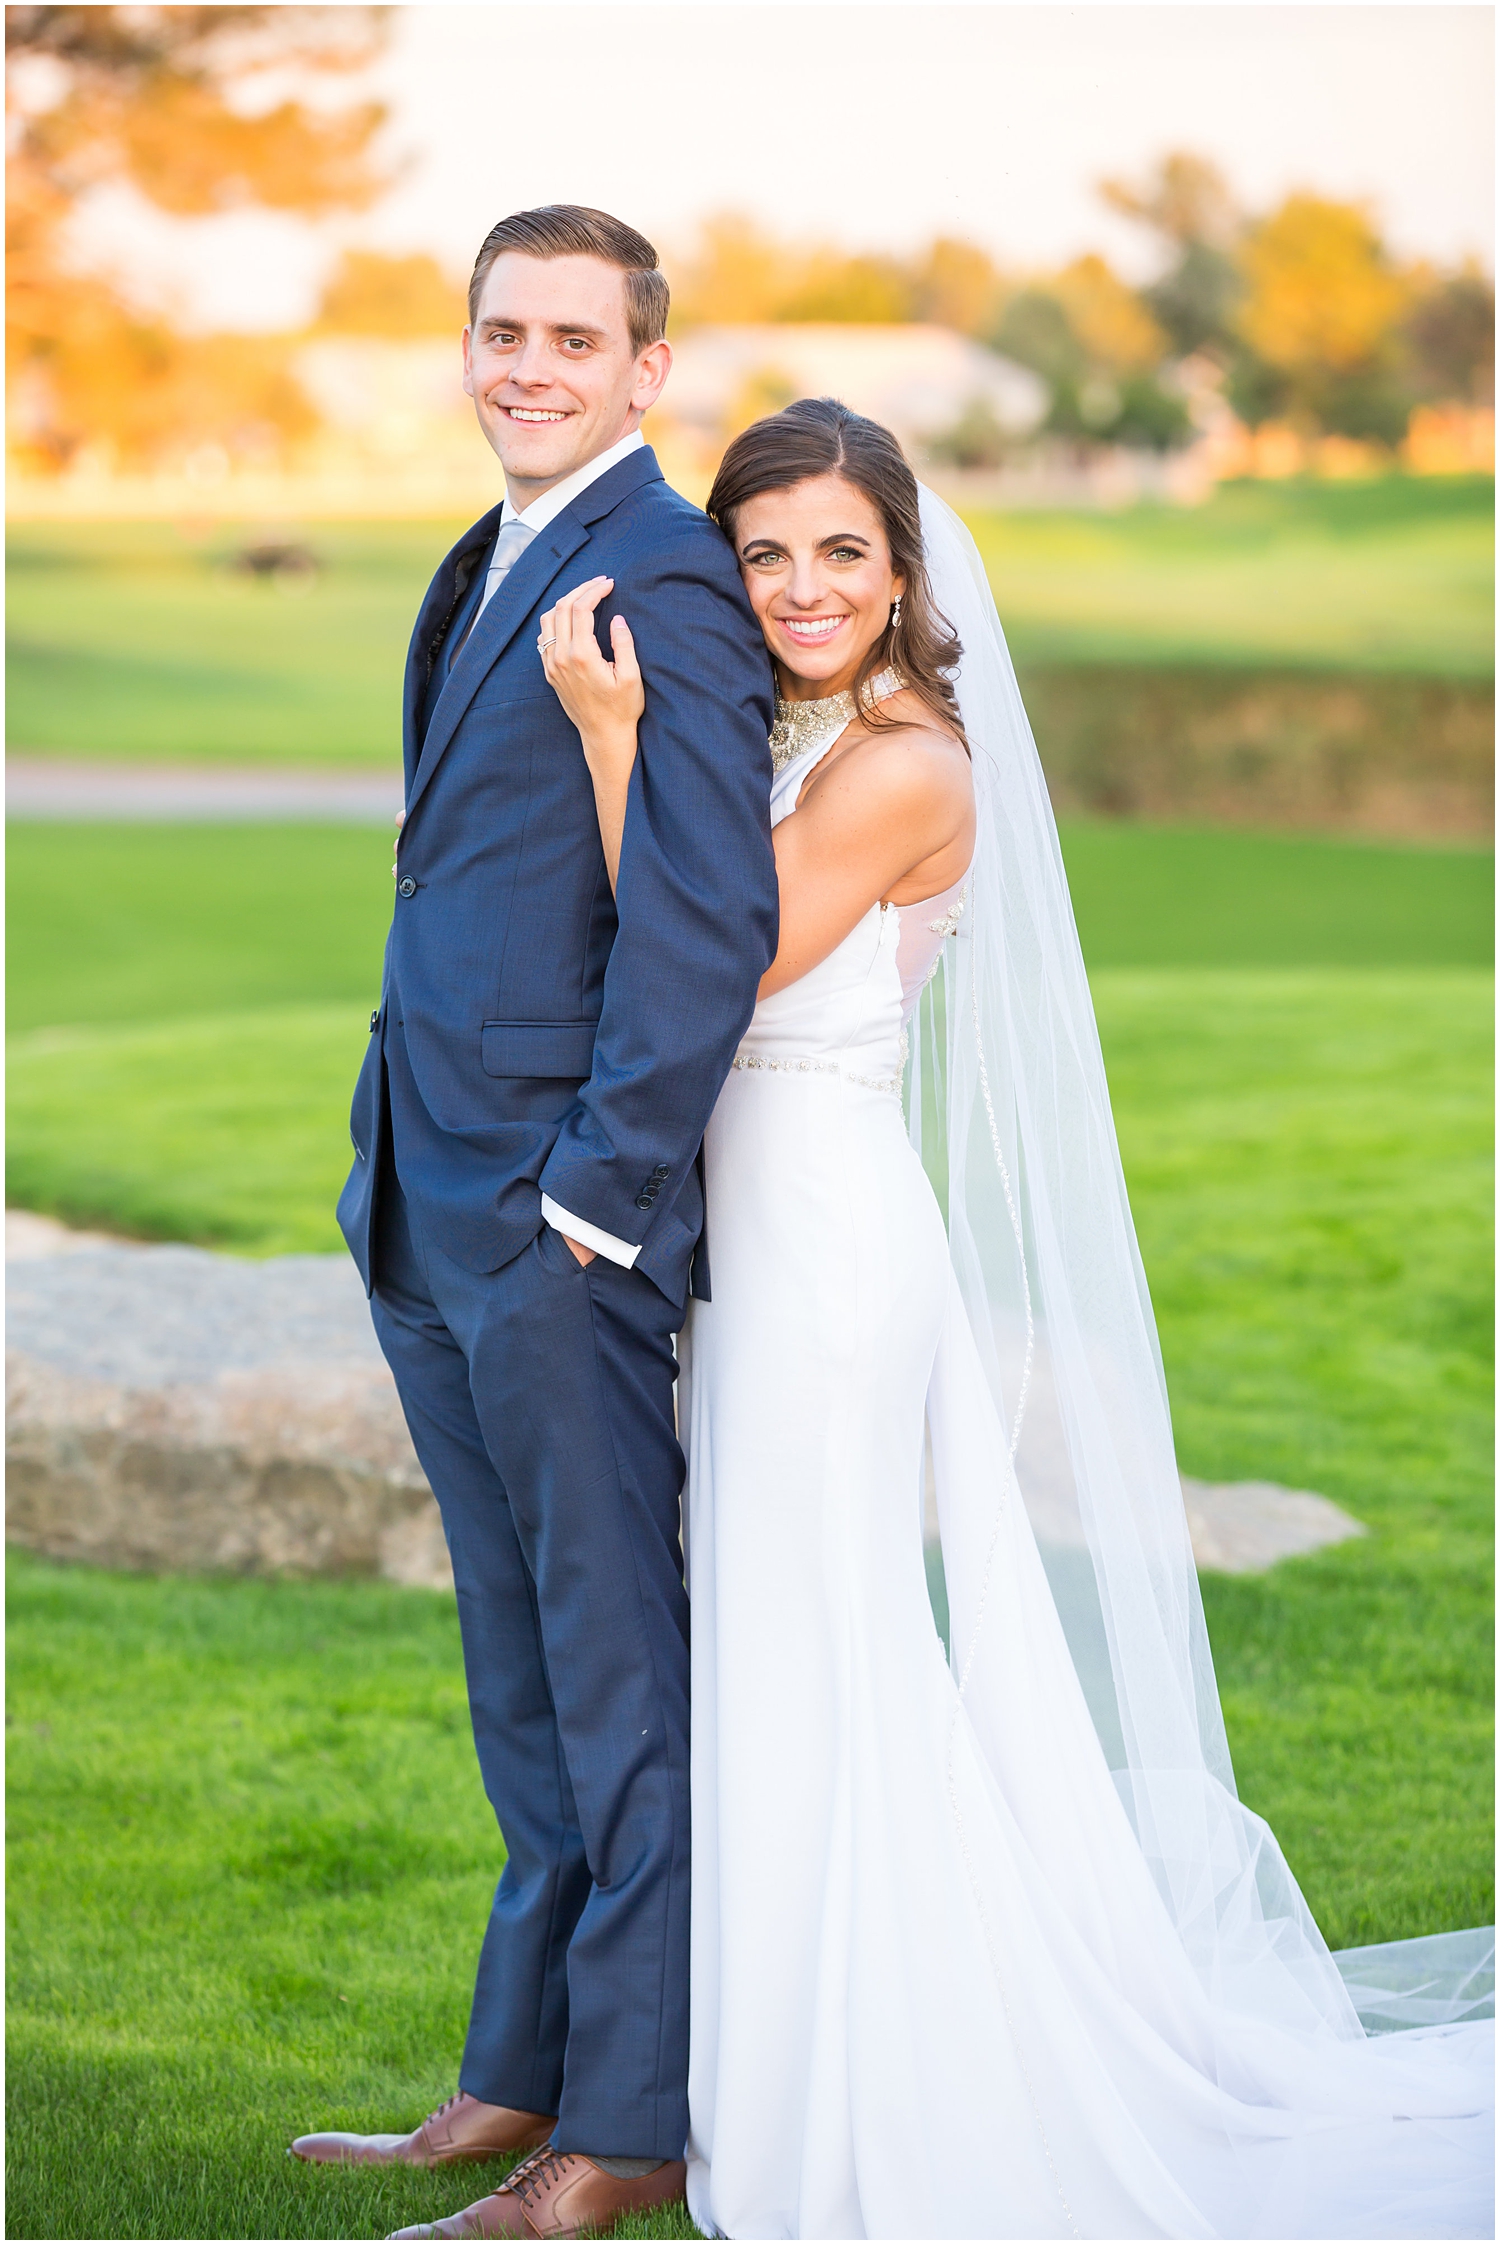 https://jenn-wagner.com/wp-content/uploads/2017/12/Ocotillo-Golf-Resort-Chandler-Arizona-Wedding-Photographer-Jenn-Wagner-Studio_0085.jpg